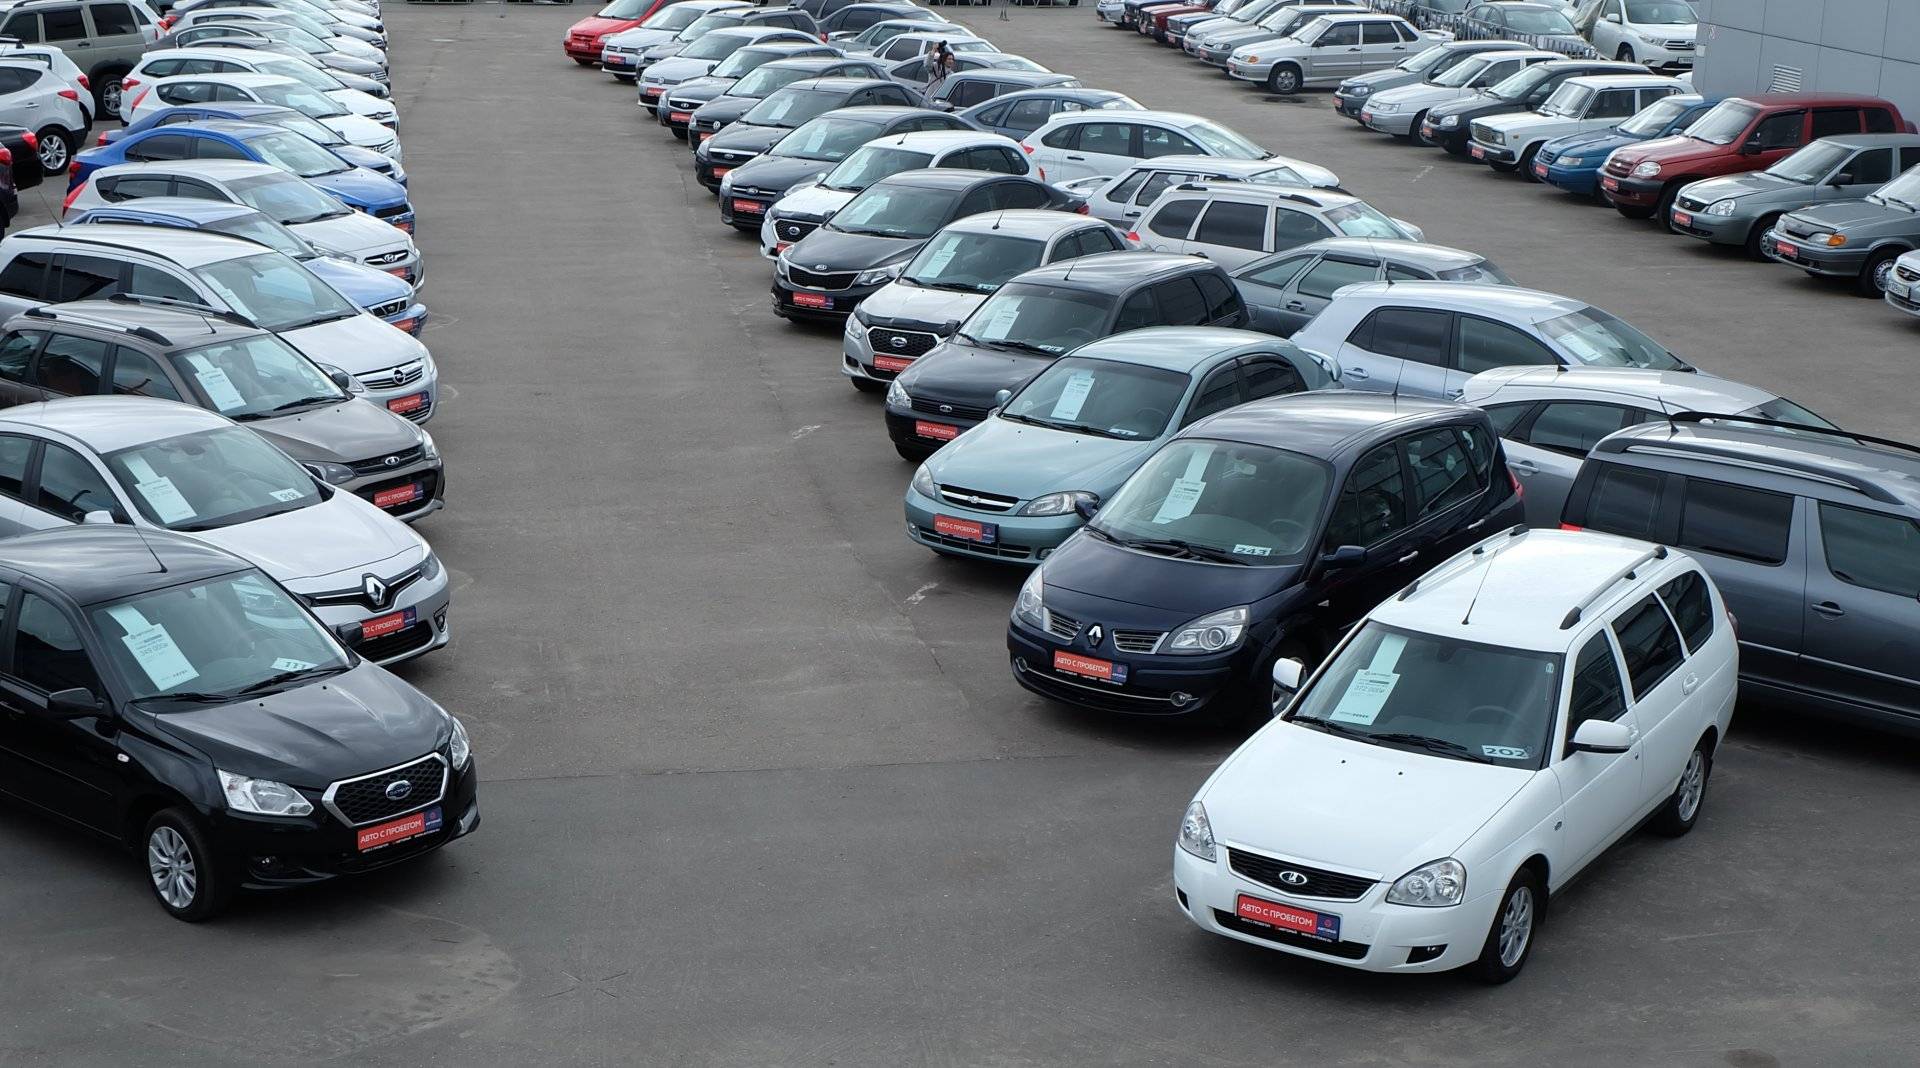 Эксперты призвали производителей снизить качество автомобилей